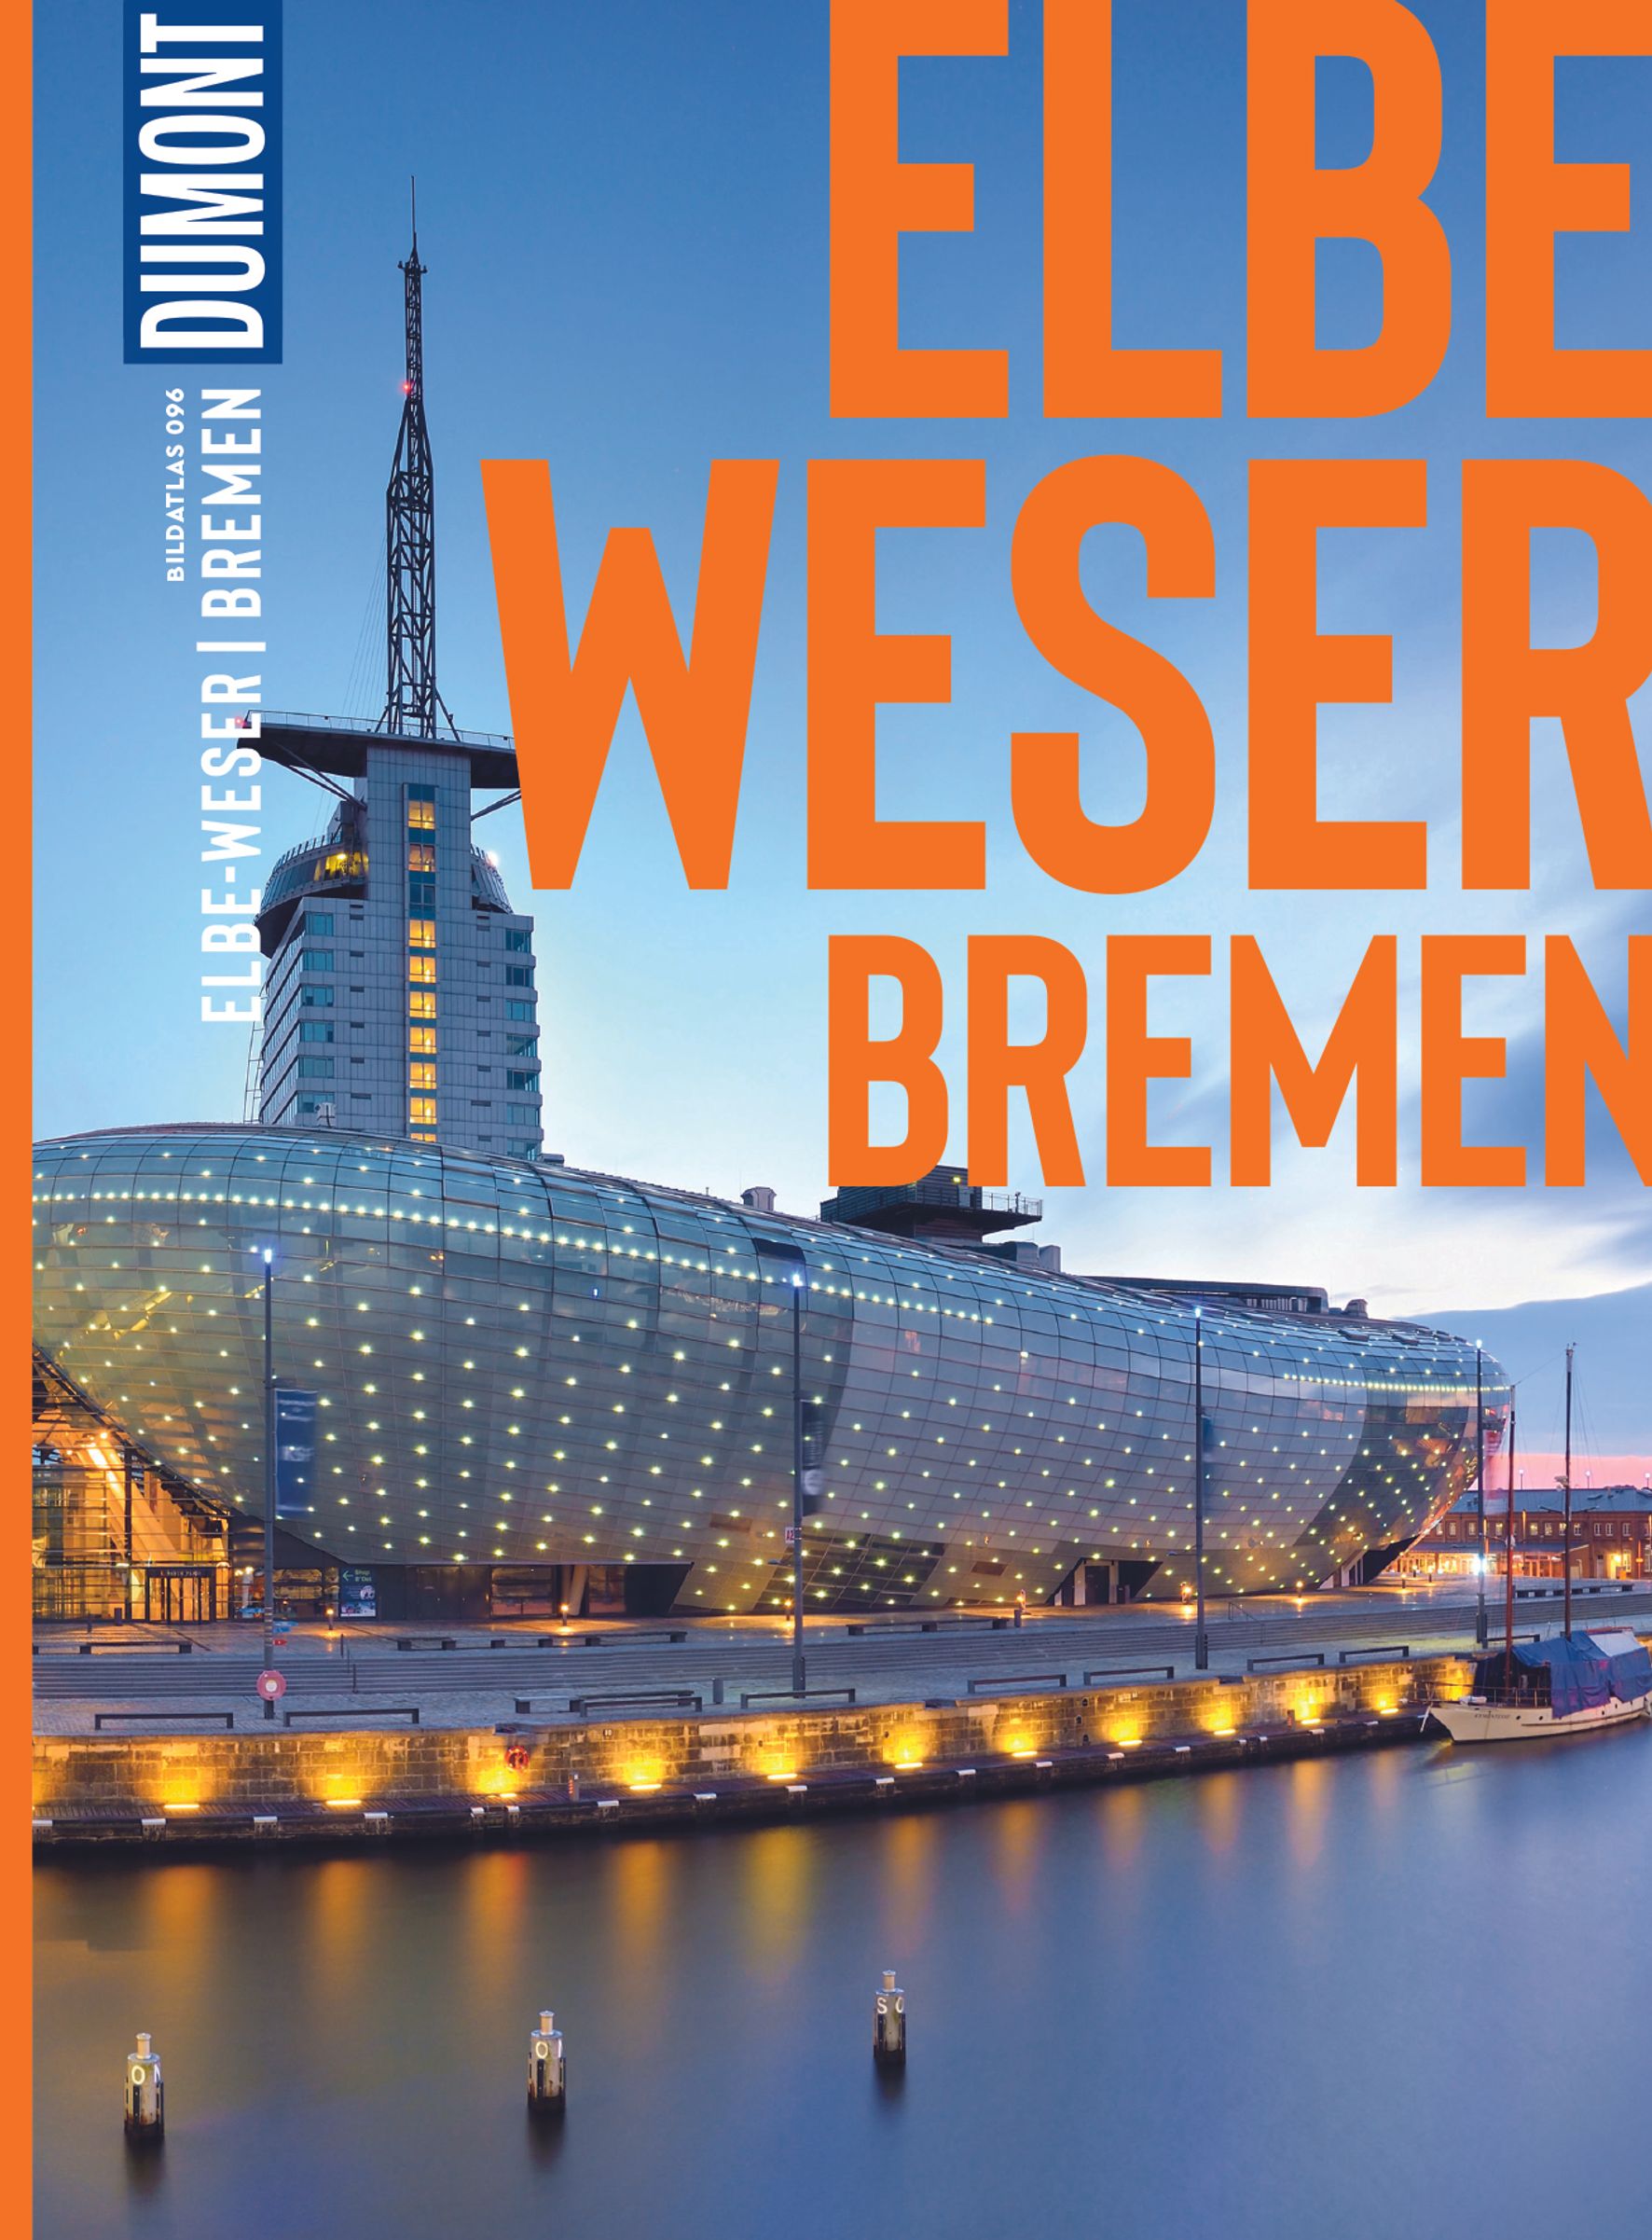 MAIRDUMONT Elbe und Weser, Bremen (eBook)